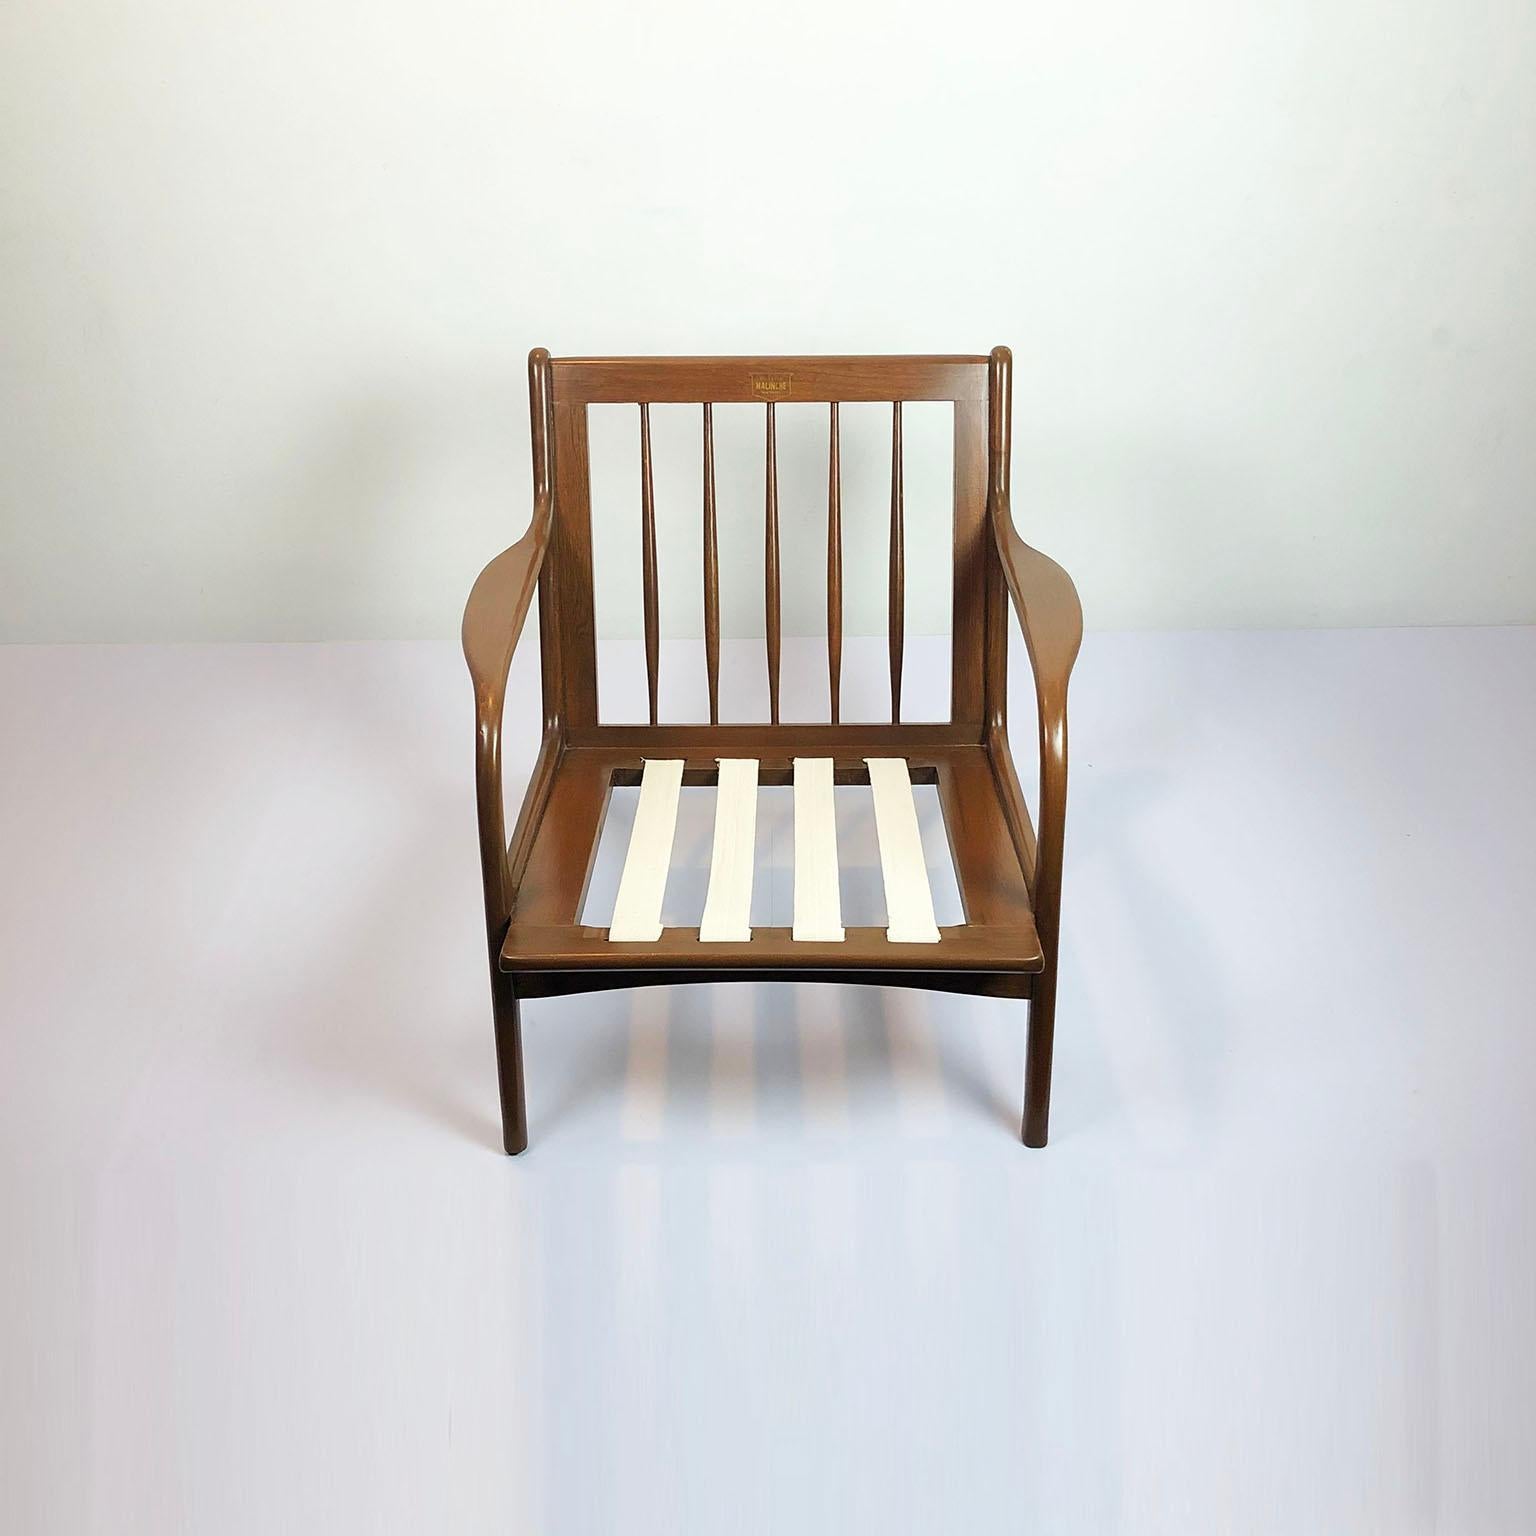 Ensemble de 3 pièces, comprenant 2 fauteuils individuels et 1 causeuse, tous en orme américain, circa 1950. Chaque pièce a été restaurée de manière professionnelle et comprend l'autocollant de la marque d'origine et le cachet de la marque sur le